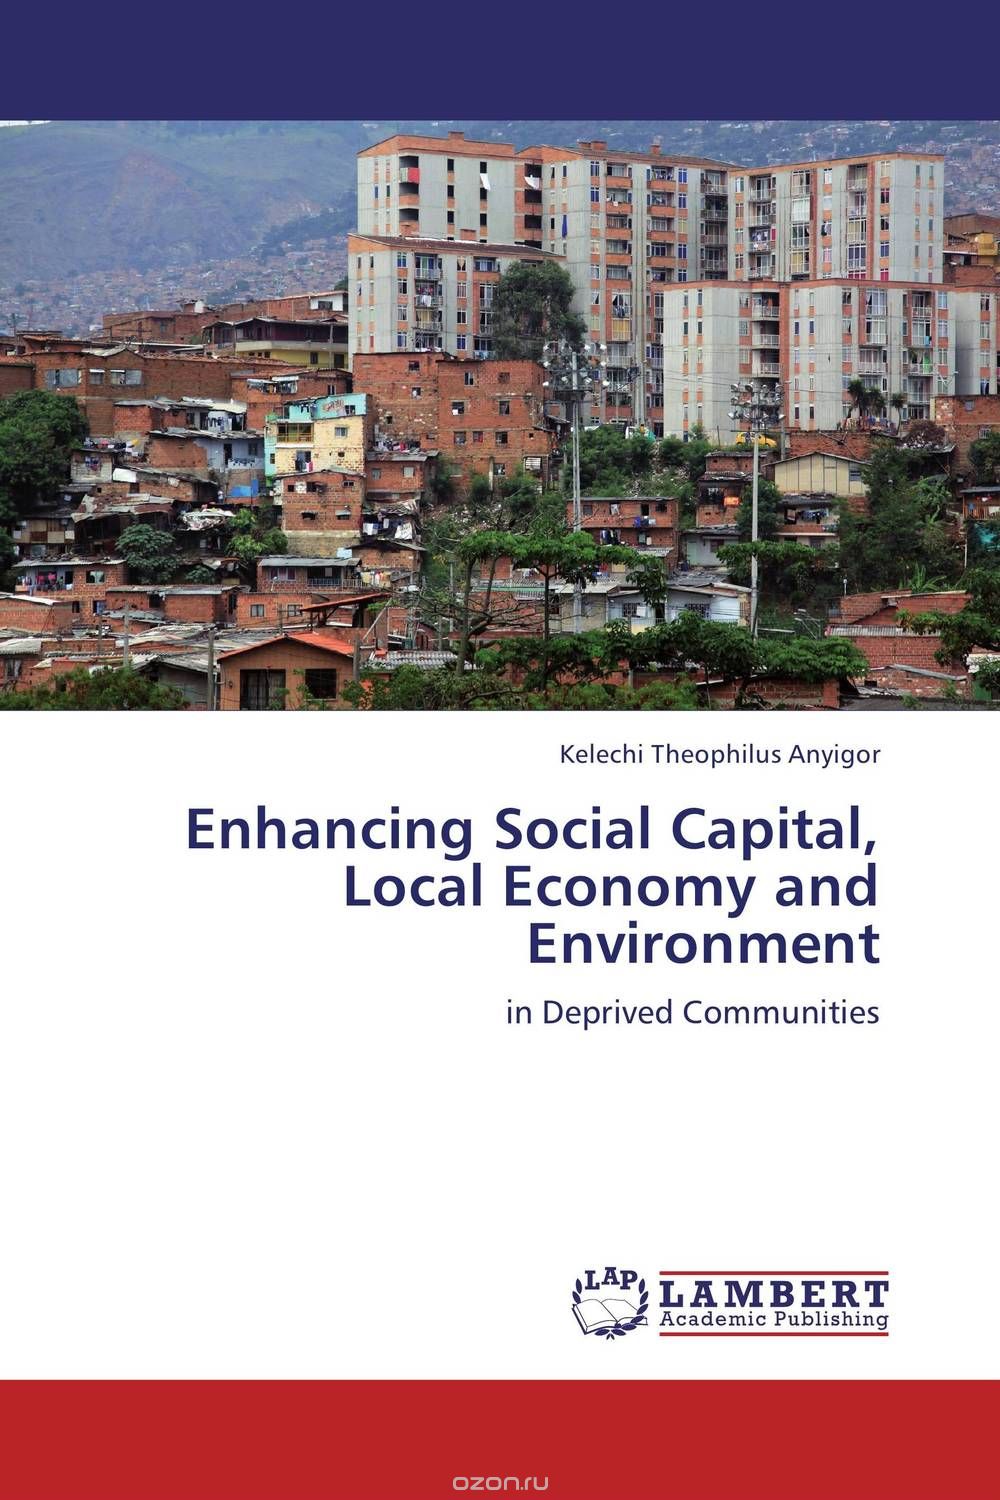 Скачать книгу "Enhancing Social Capital, Local Economy and Environment"